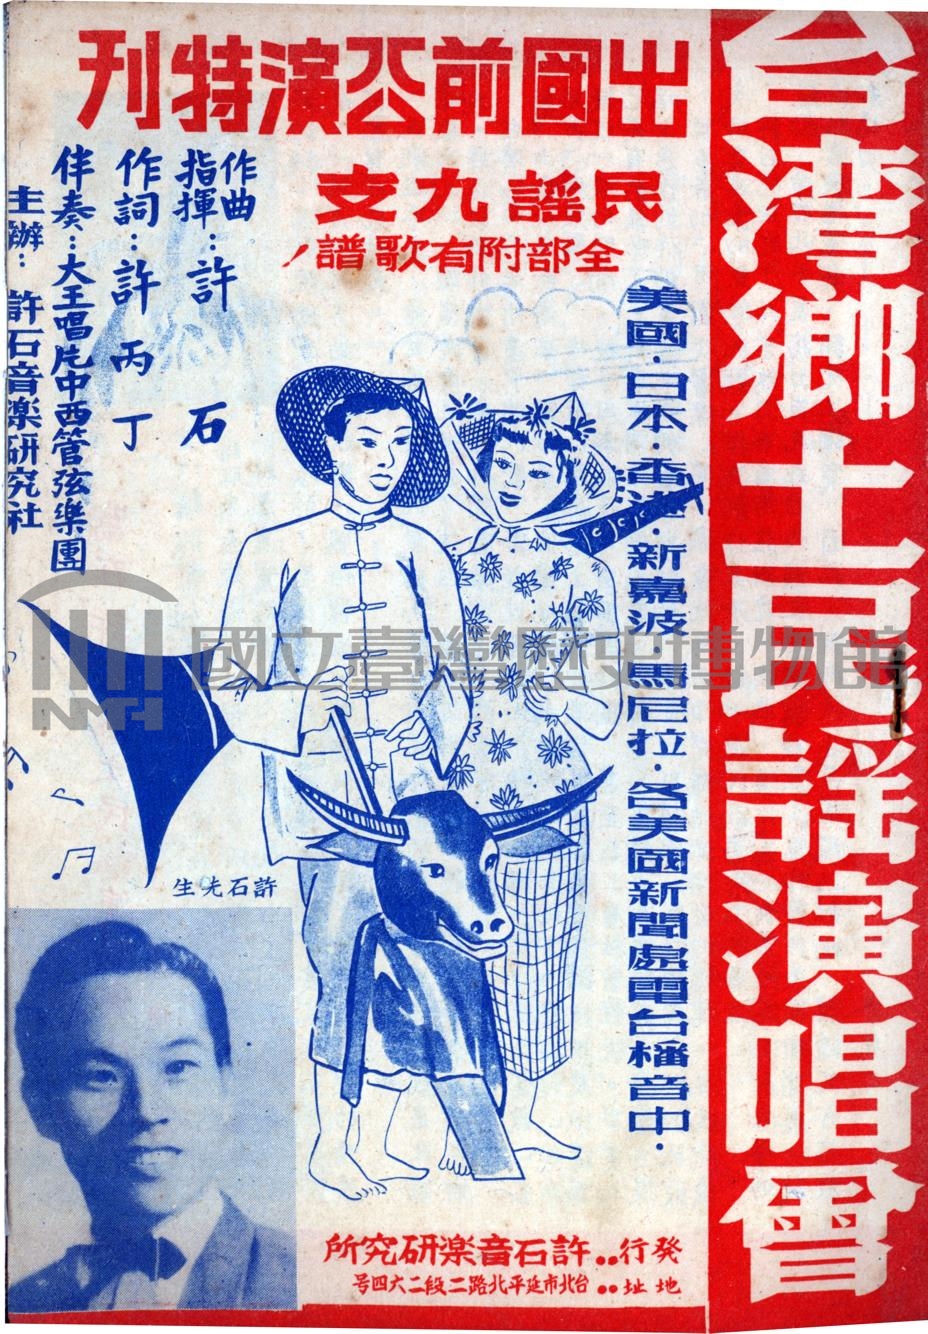 03-1960年台灣鄉土民謠演唱匯演出專刊封面.jpg